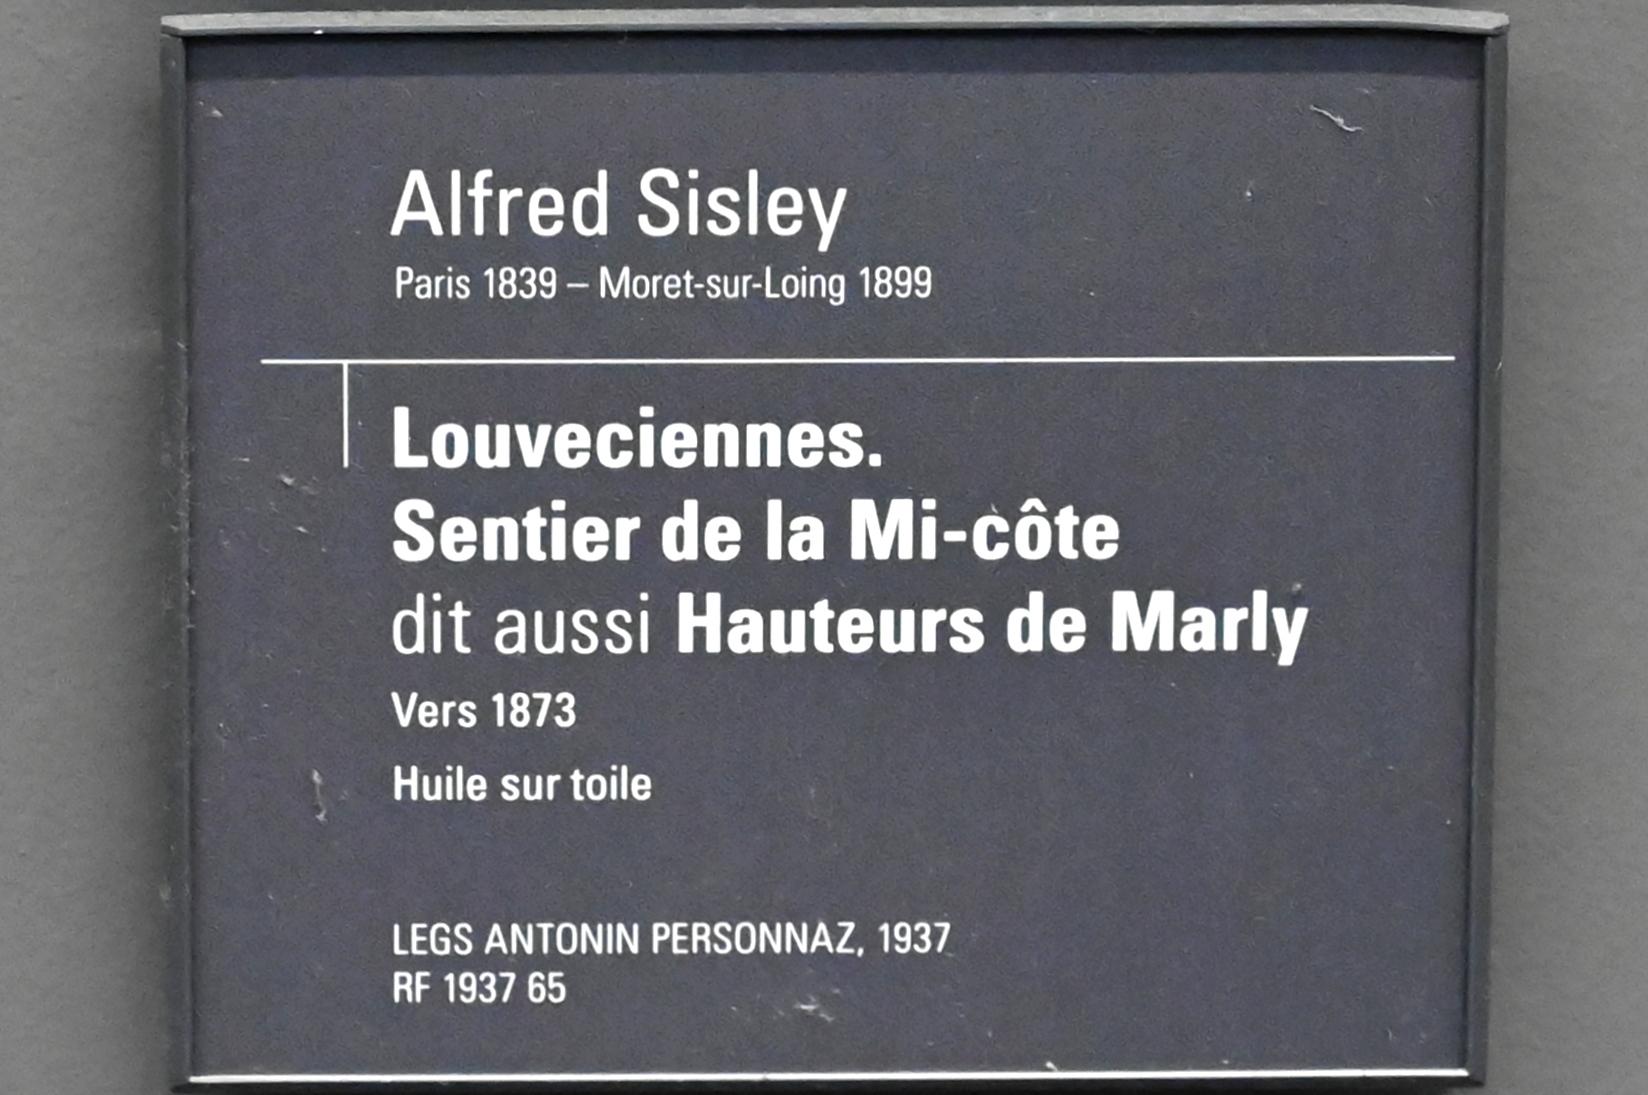 Alfred Sisley (1872–1896), Louveciennes. Sentier de la Mi-côte (Hauteurs de Marly), Paris, Musée d’Orsay, um 1873, Bild 2/2